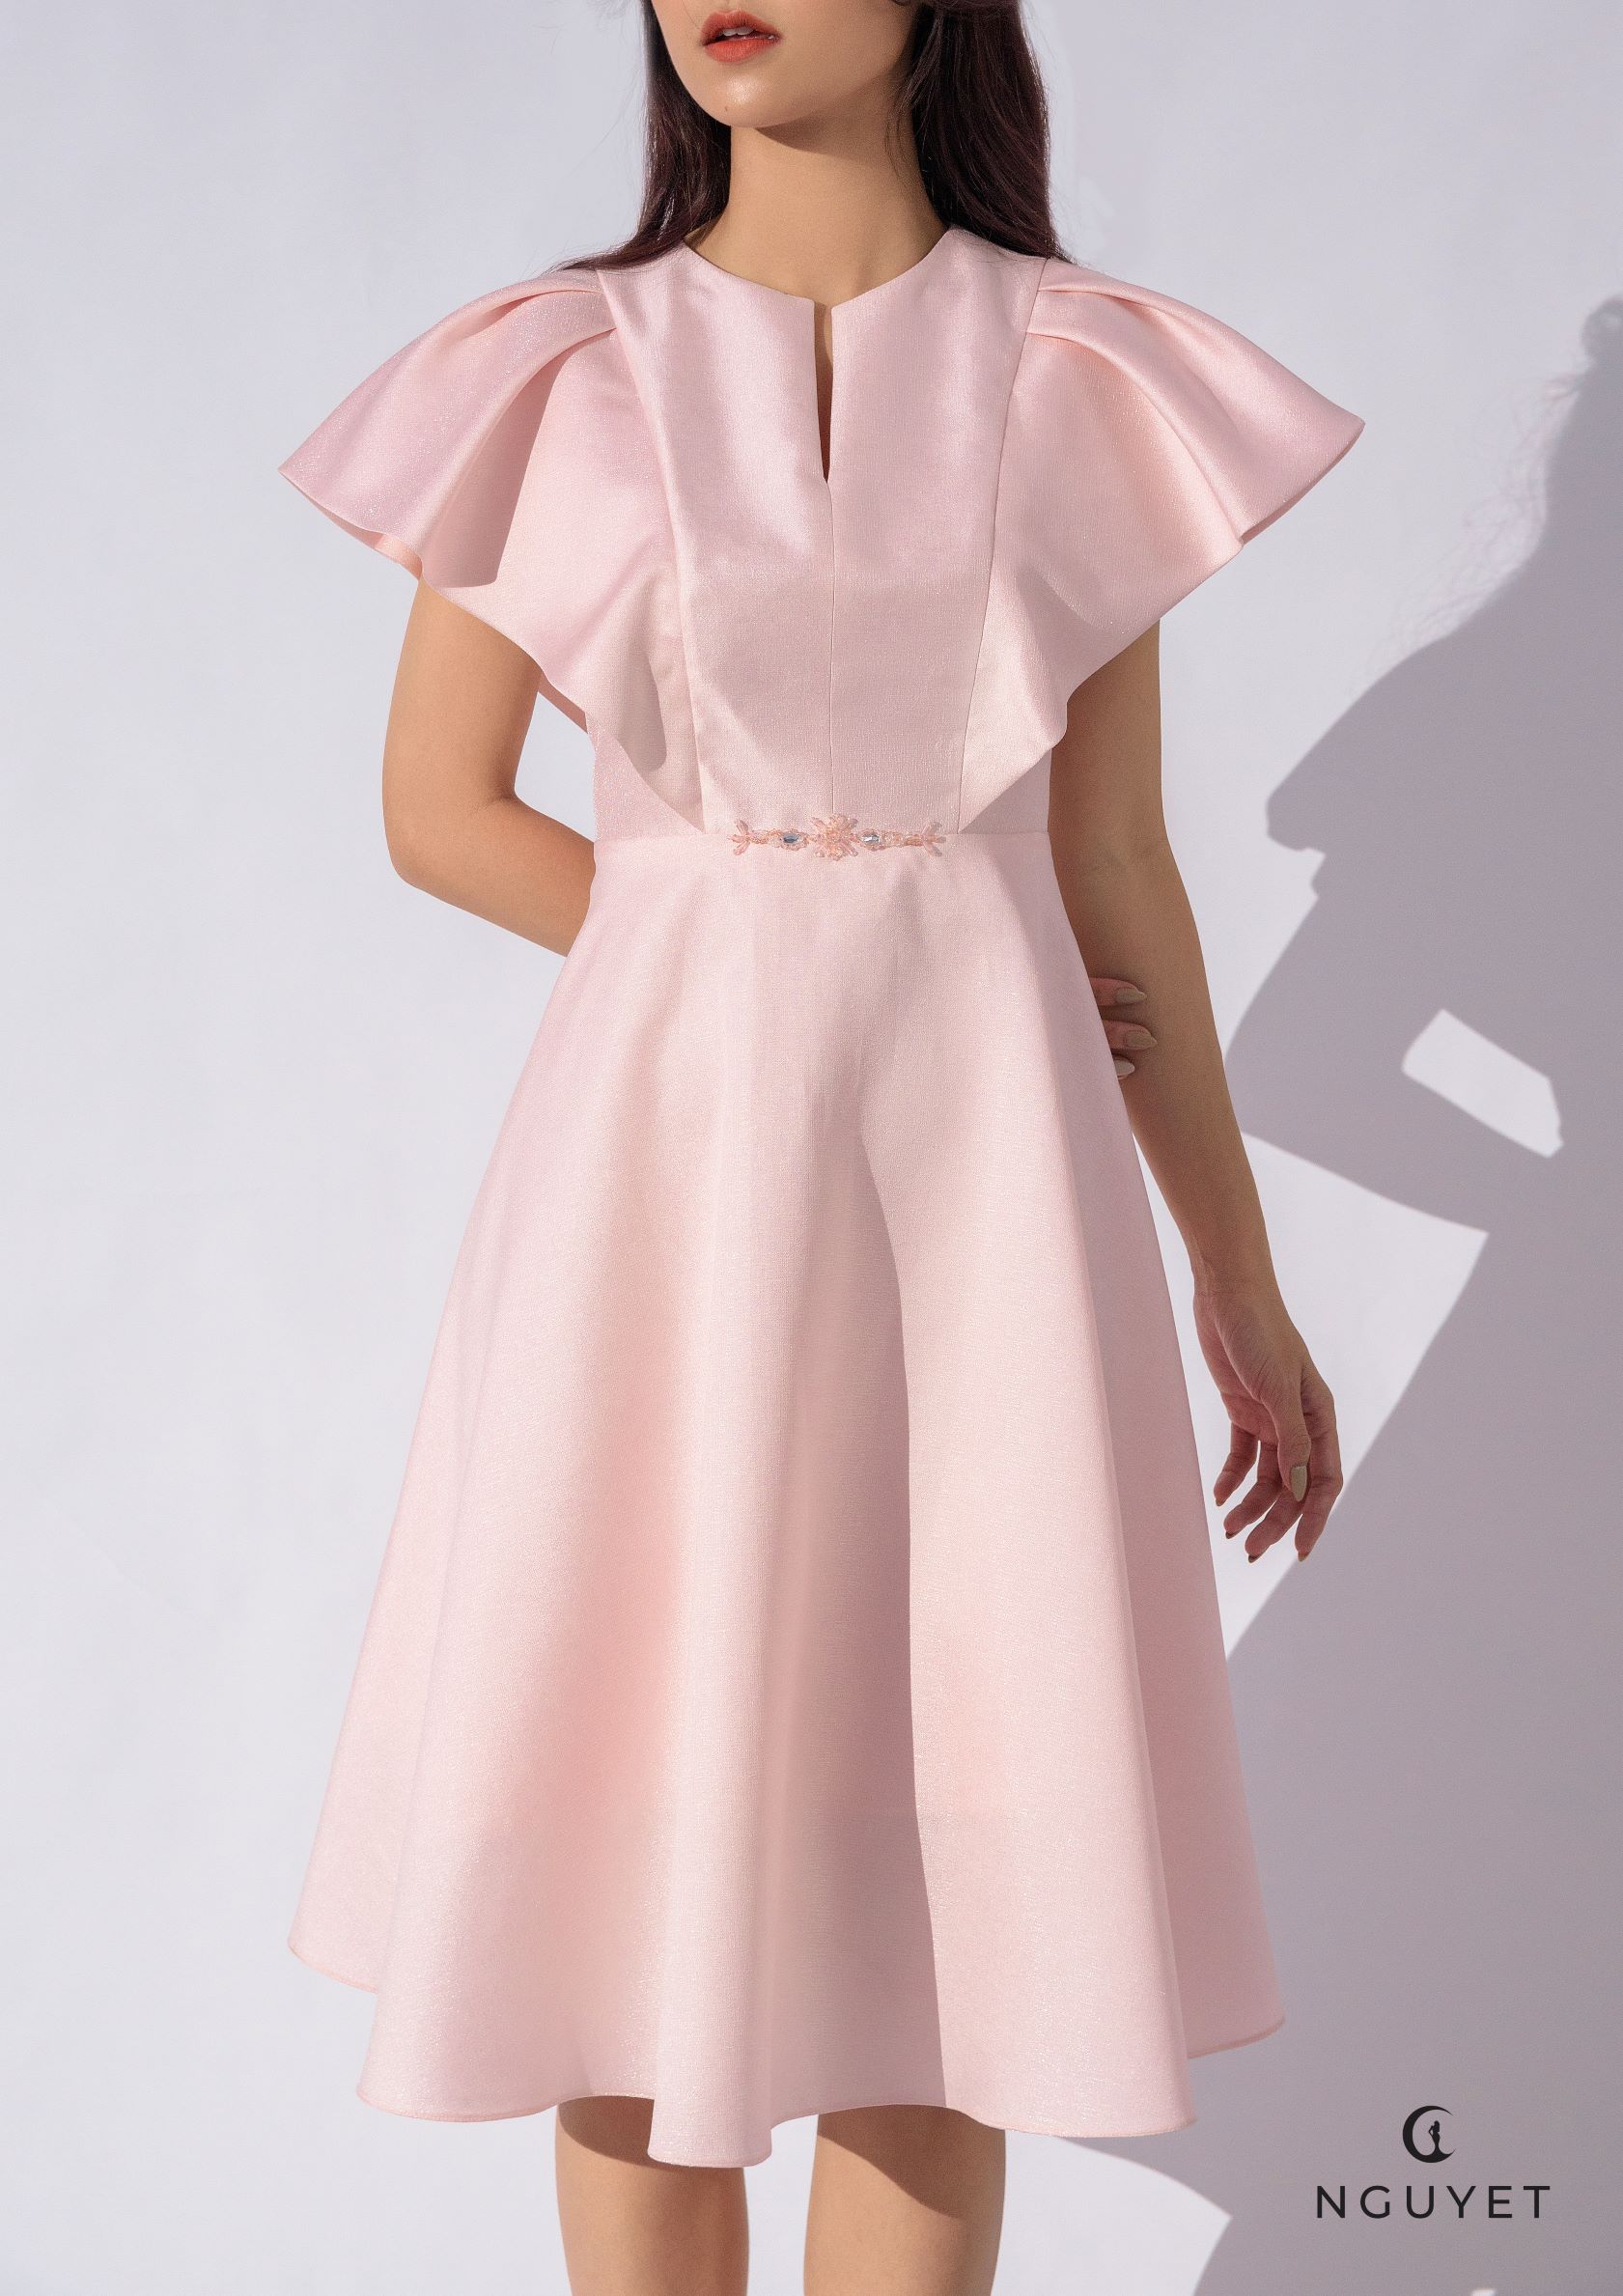 20 mẫu váy phù dâu màu hồng pastel đẹp dành cho mùa cưới 2020